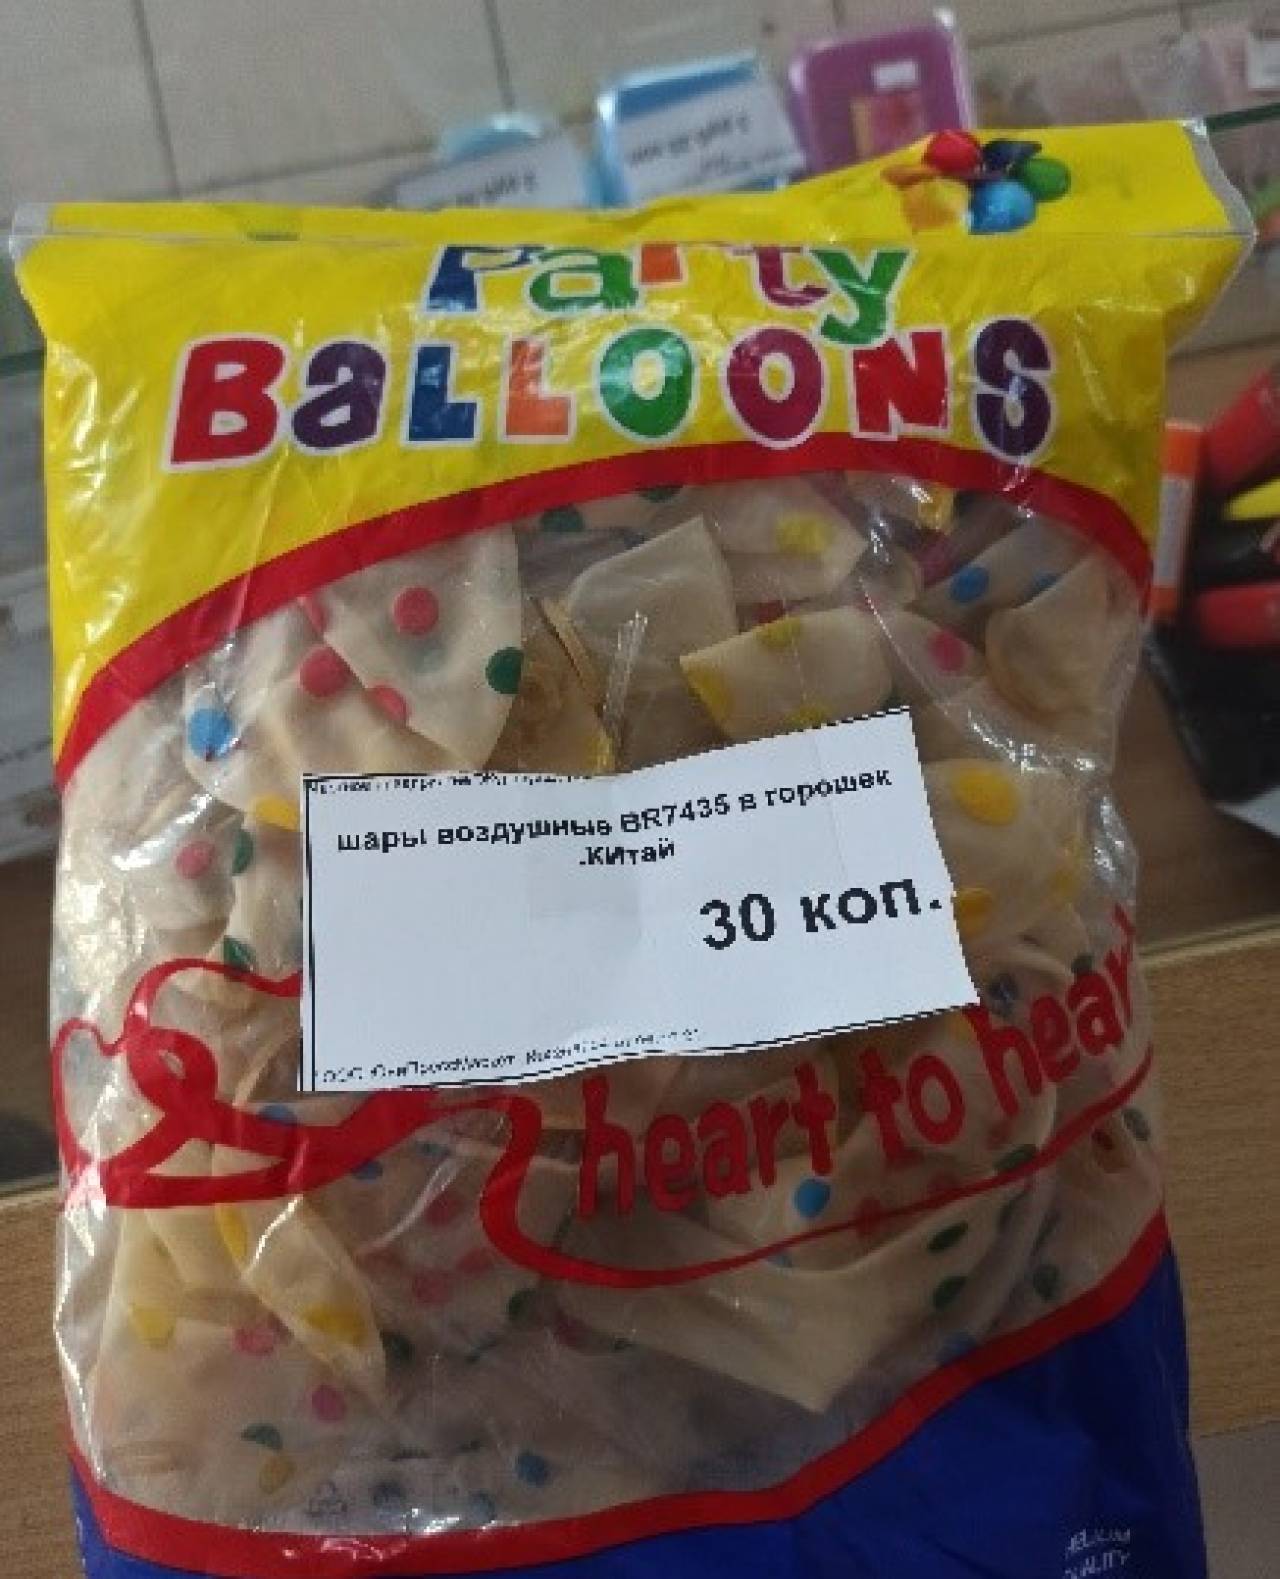 В Гродно запретили продавать китайские воздушные шарики — все из-за запаха